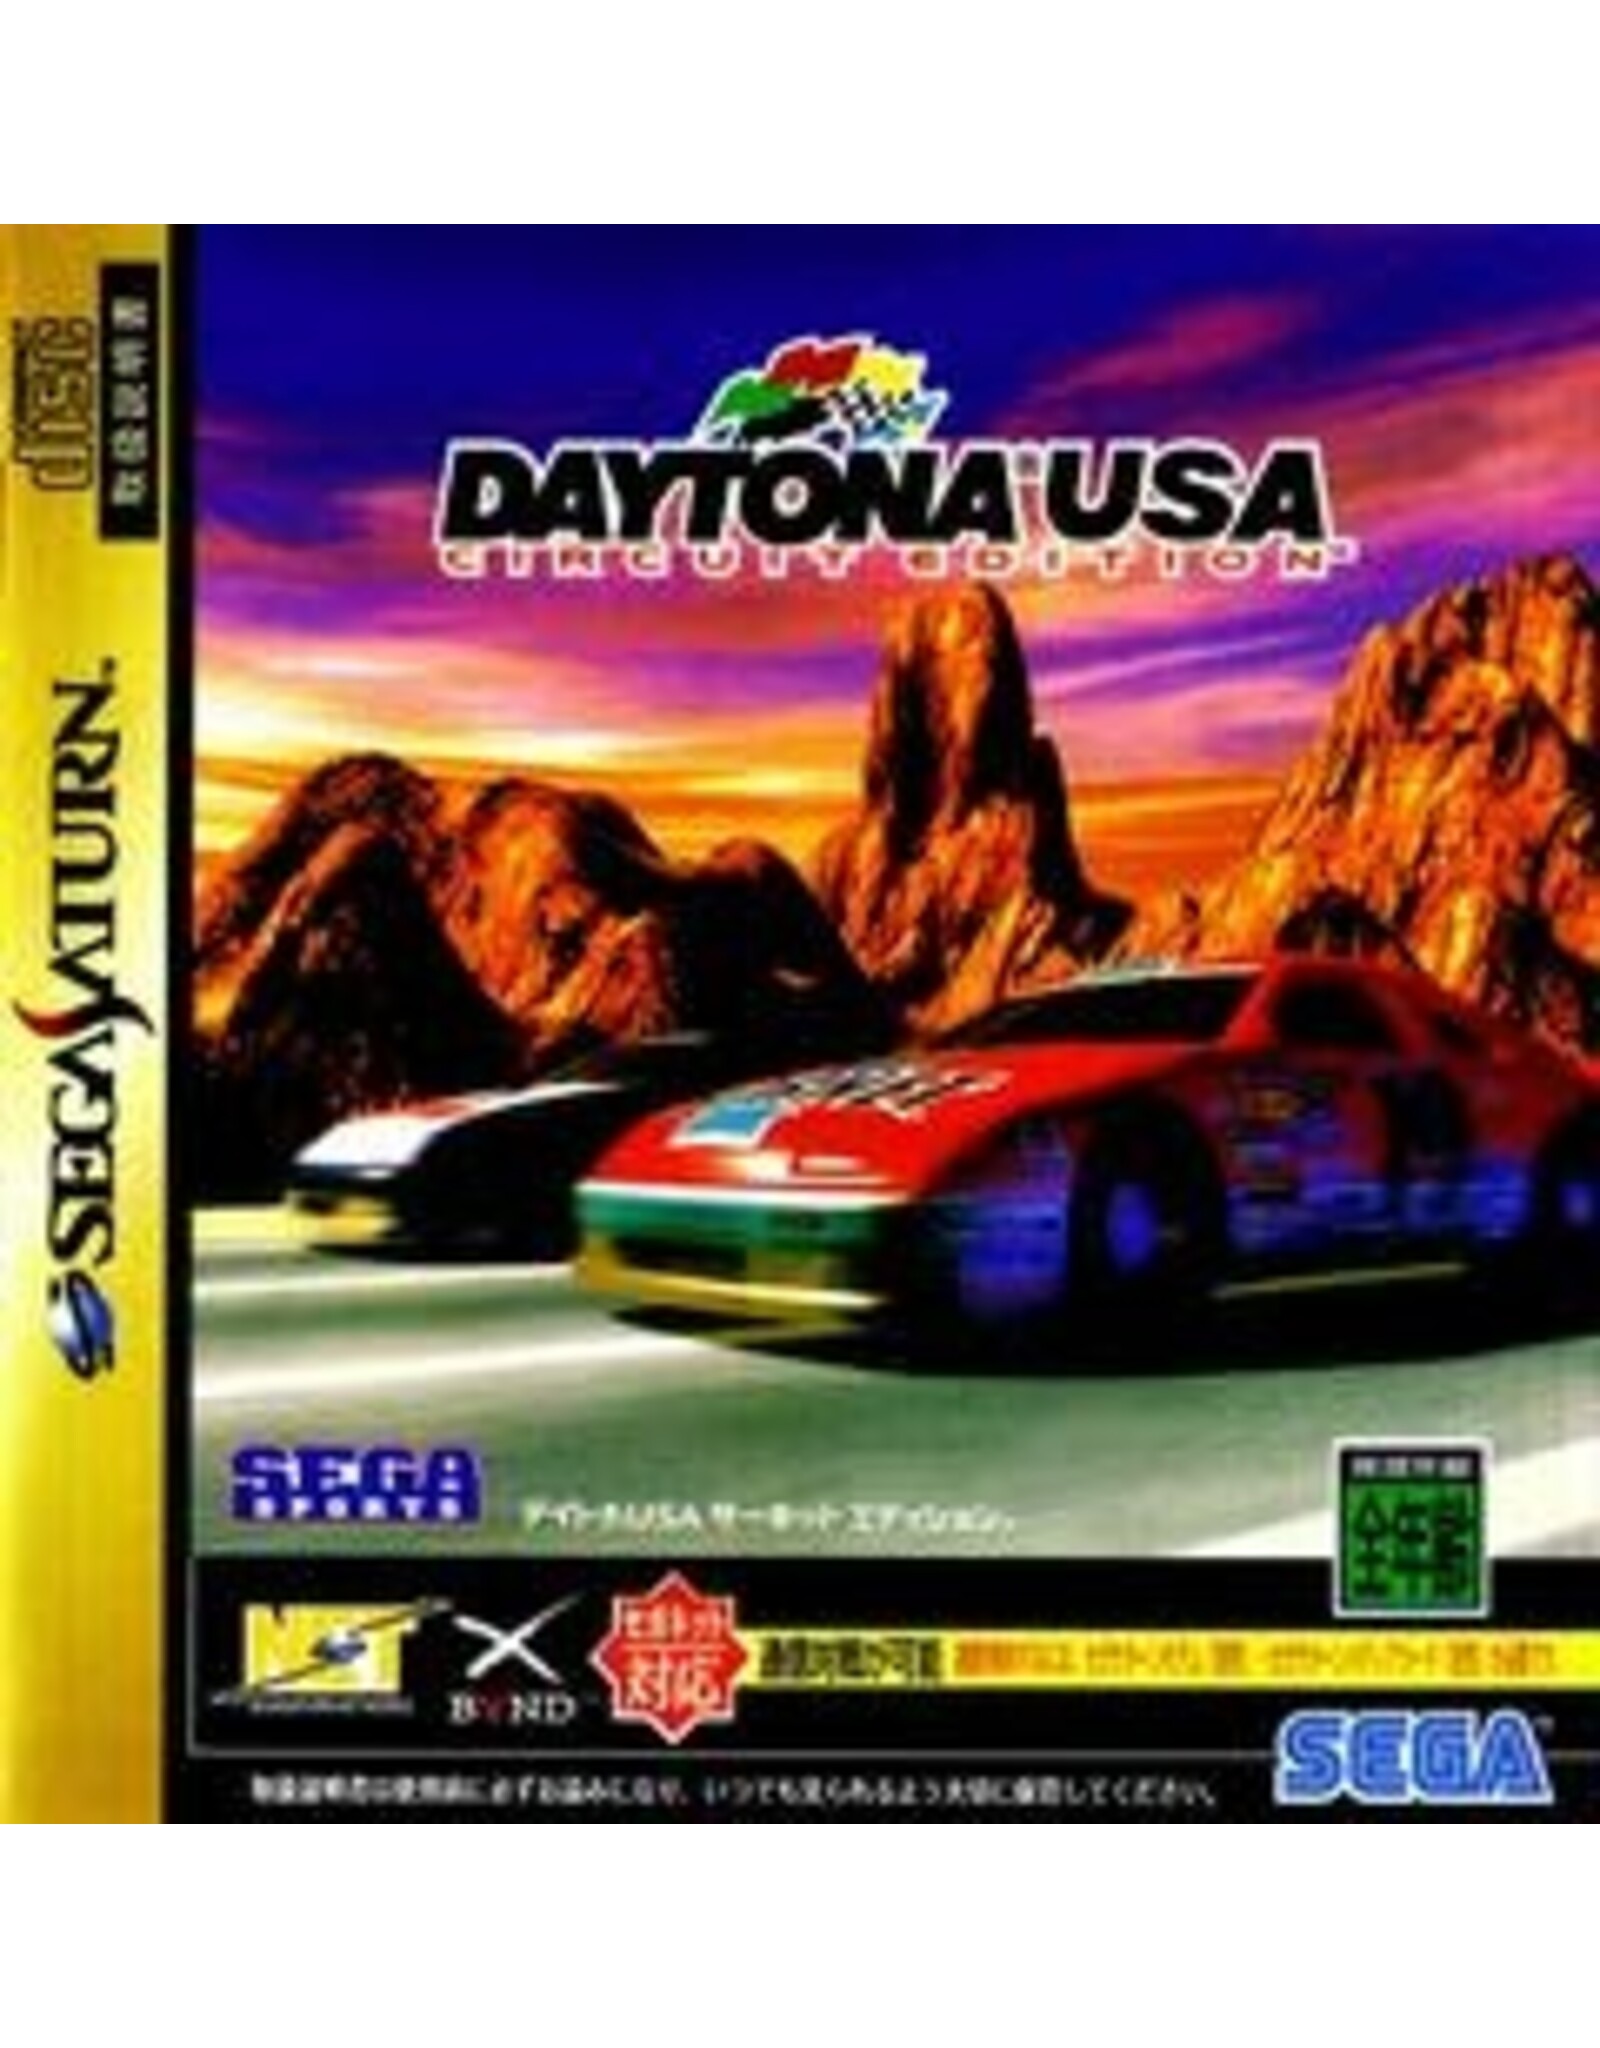 Sega Saturn Daytona USA Circuit Edition - JP Import (Used)